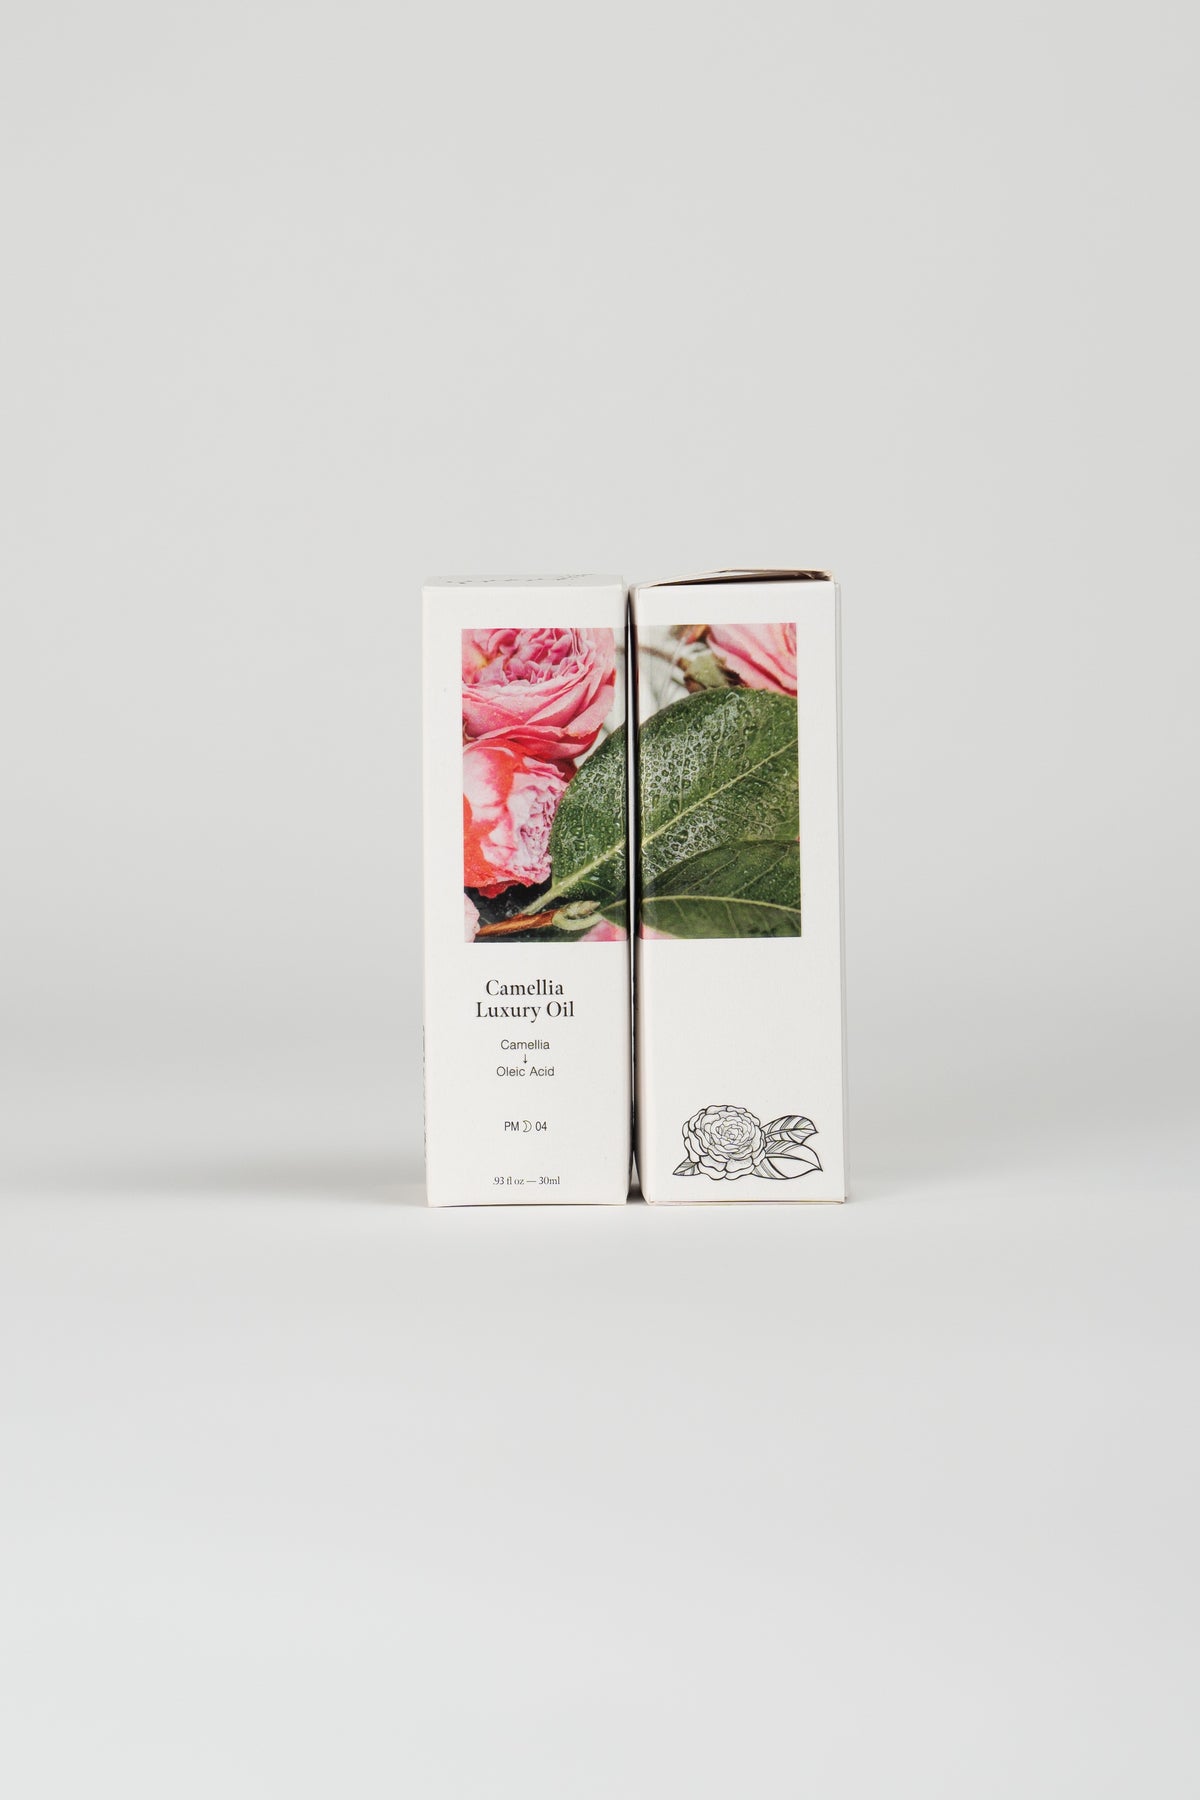 Camellia Luxury Oil